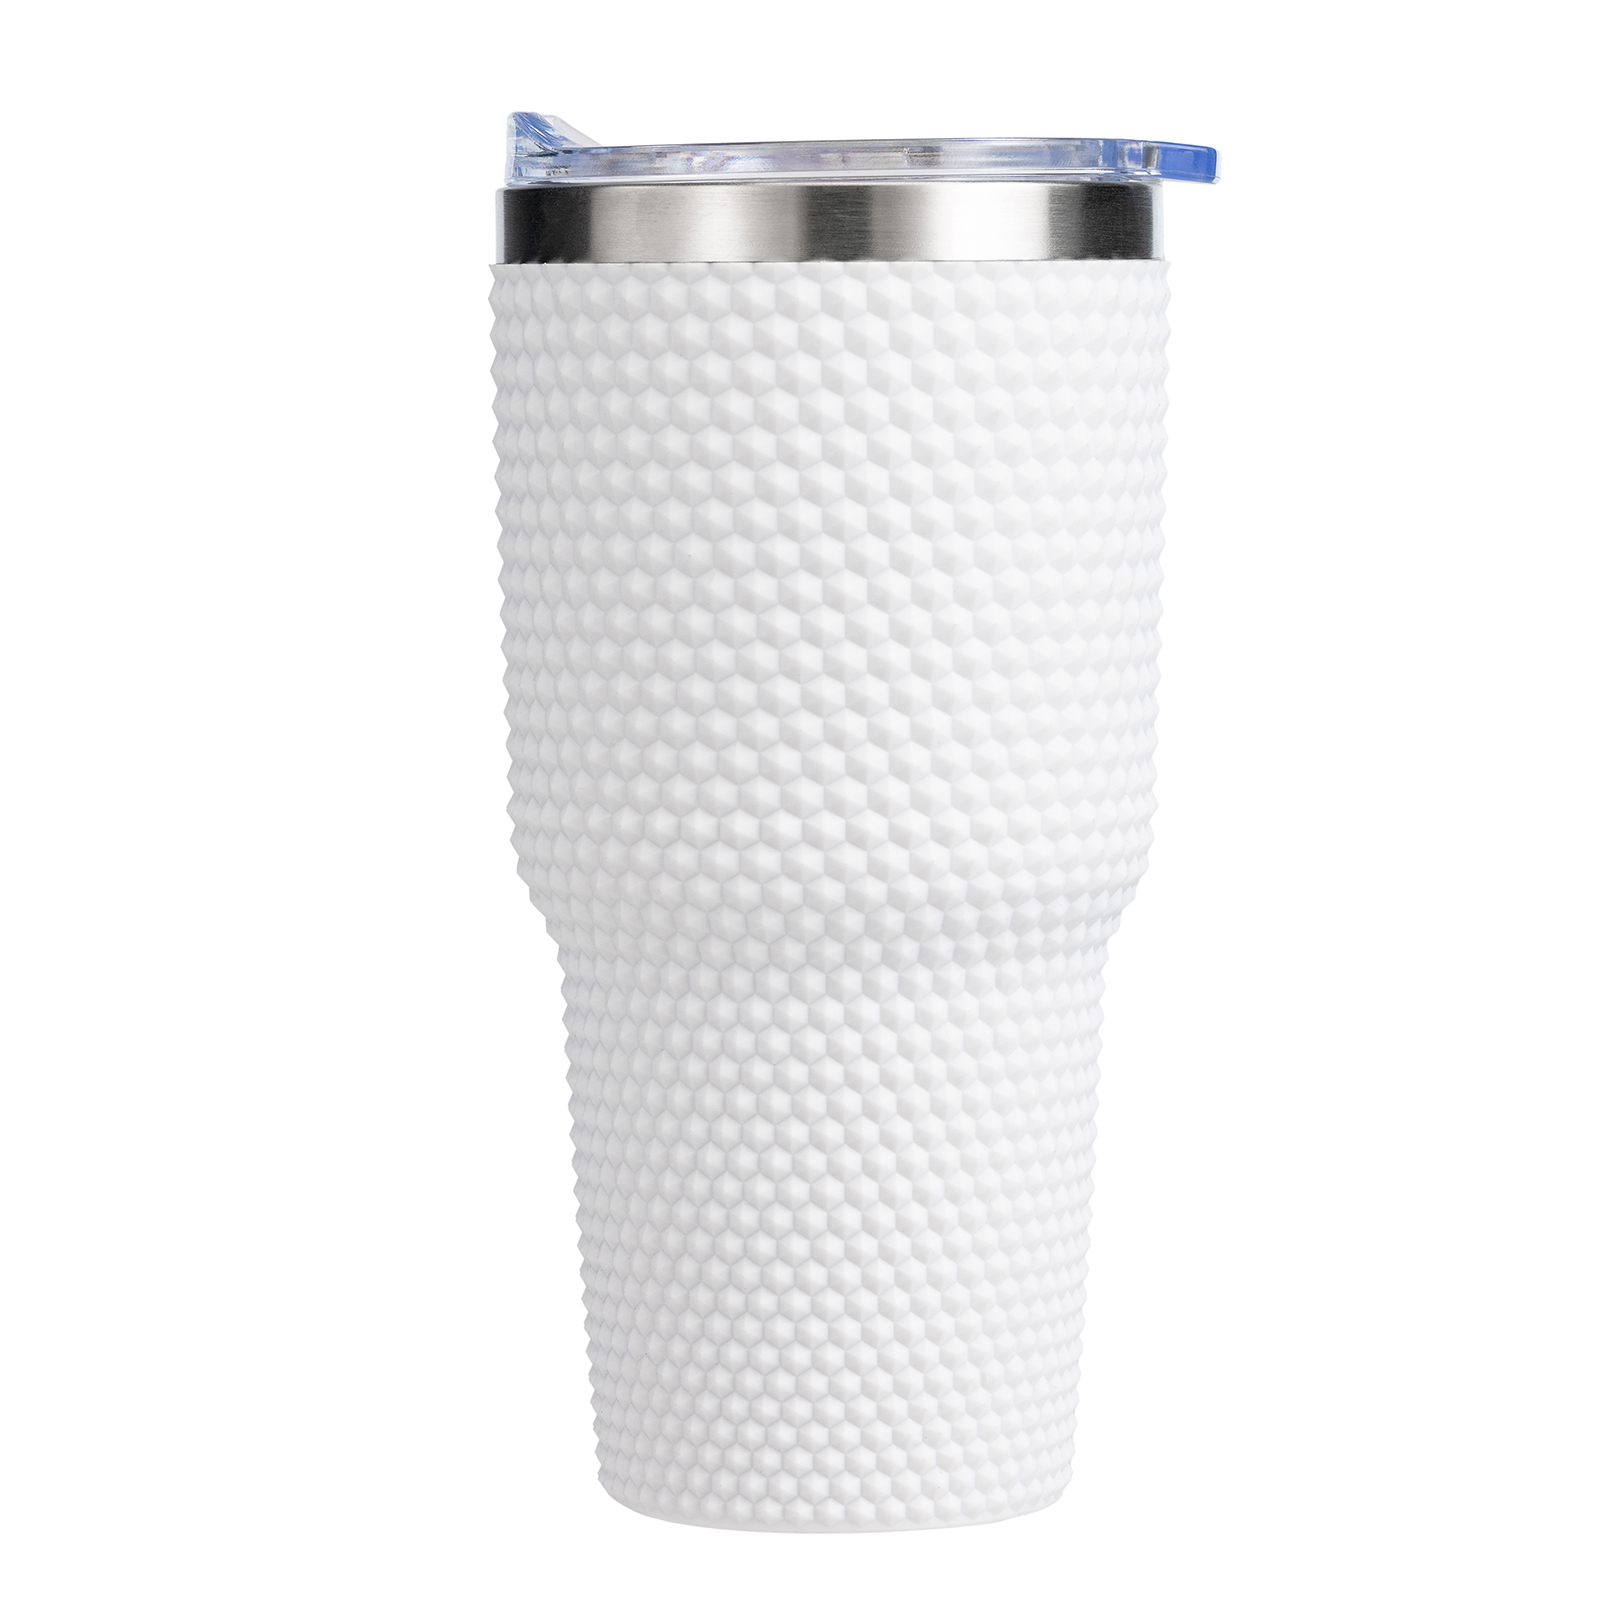 Да ли је боље користити пластику бр. 5 или пластику бр. 7 за пластичне чаше за воду?